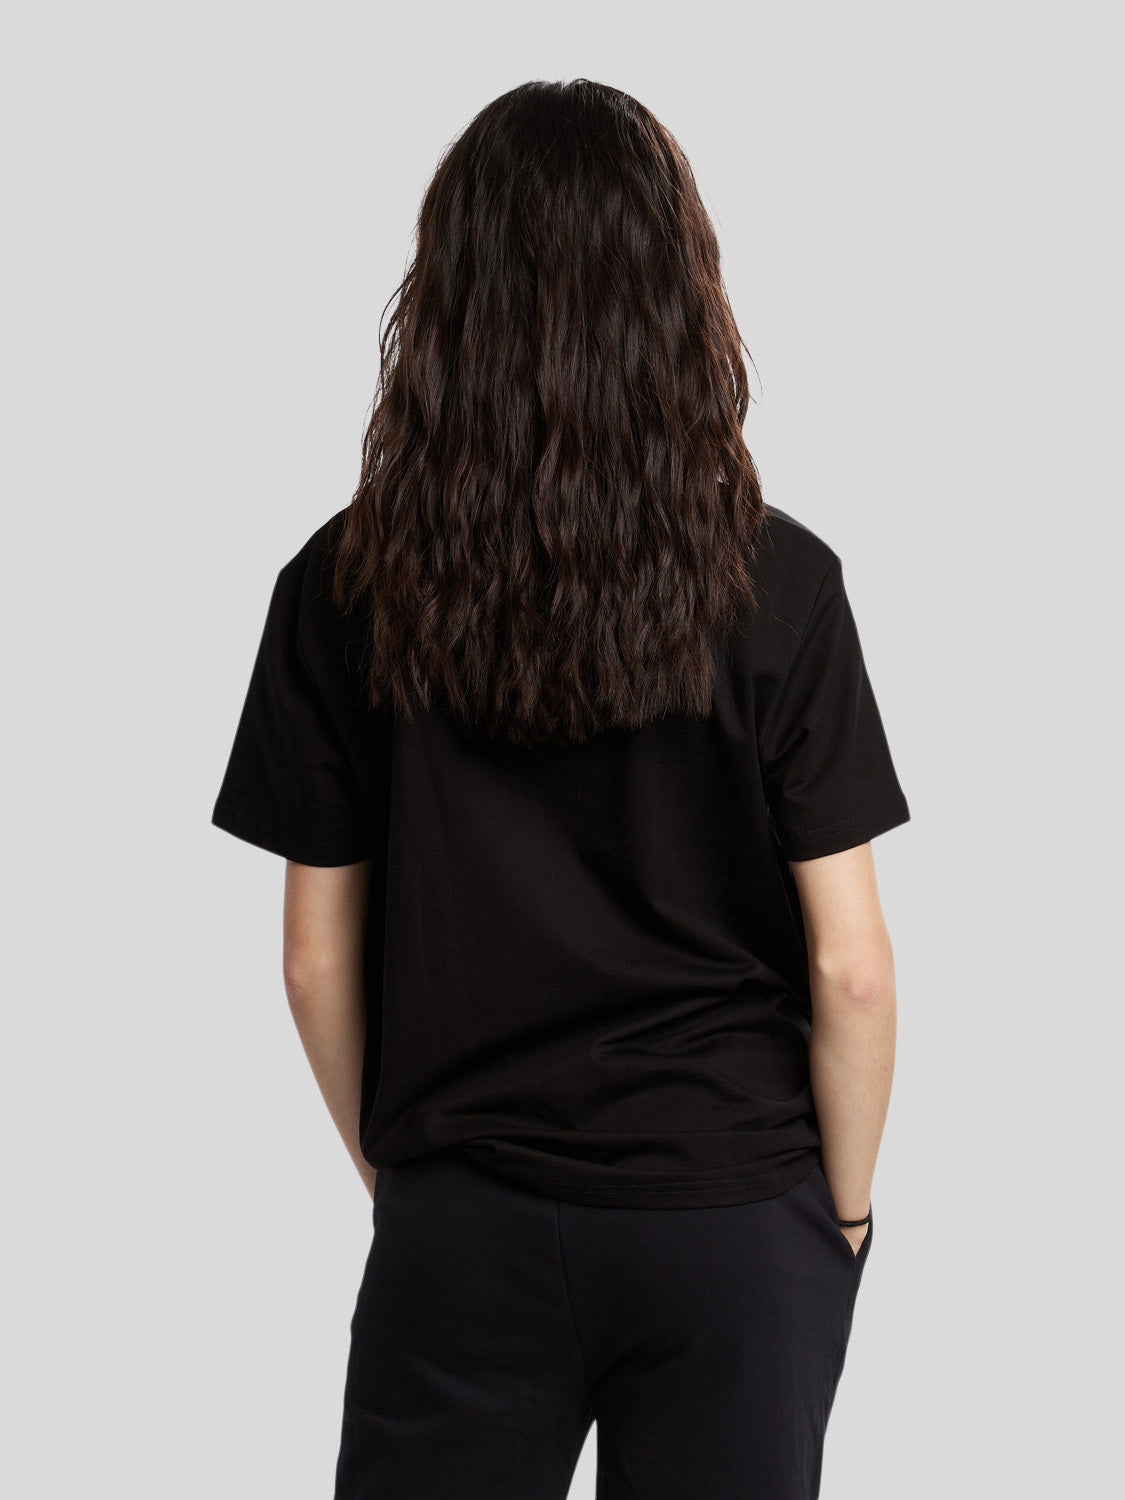 kvinde bagfra med oversized t-shirt i sort